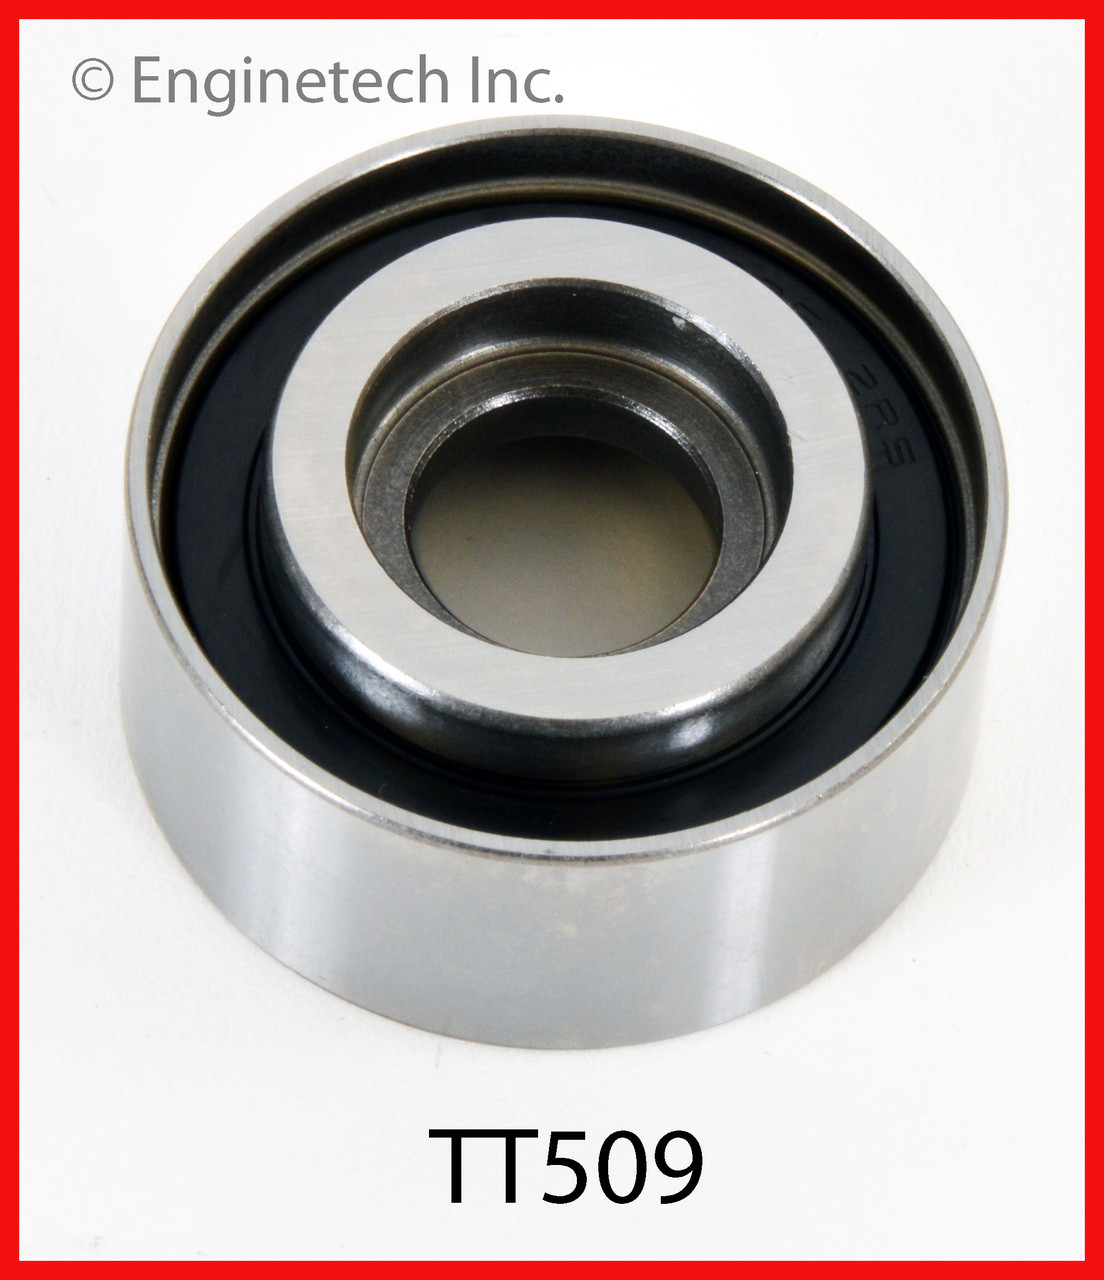 Timing Belt Idler - 2014 Acura TL 3.5L (TT509.K131)